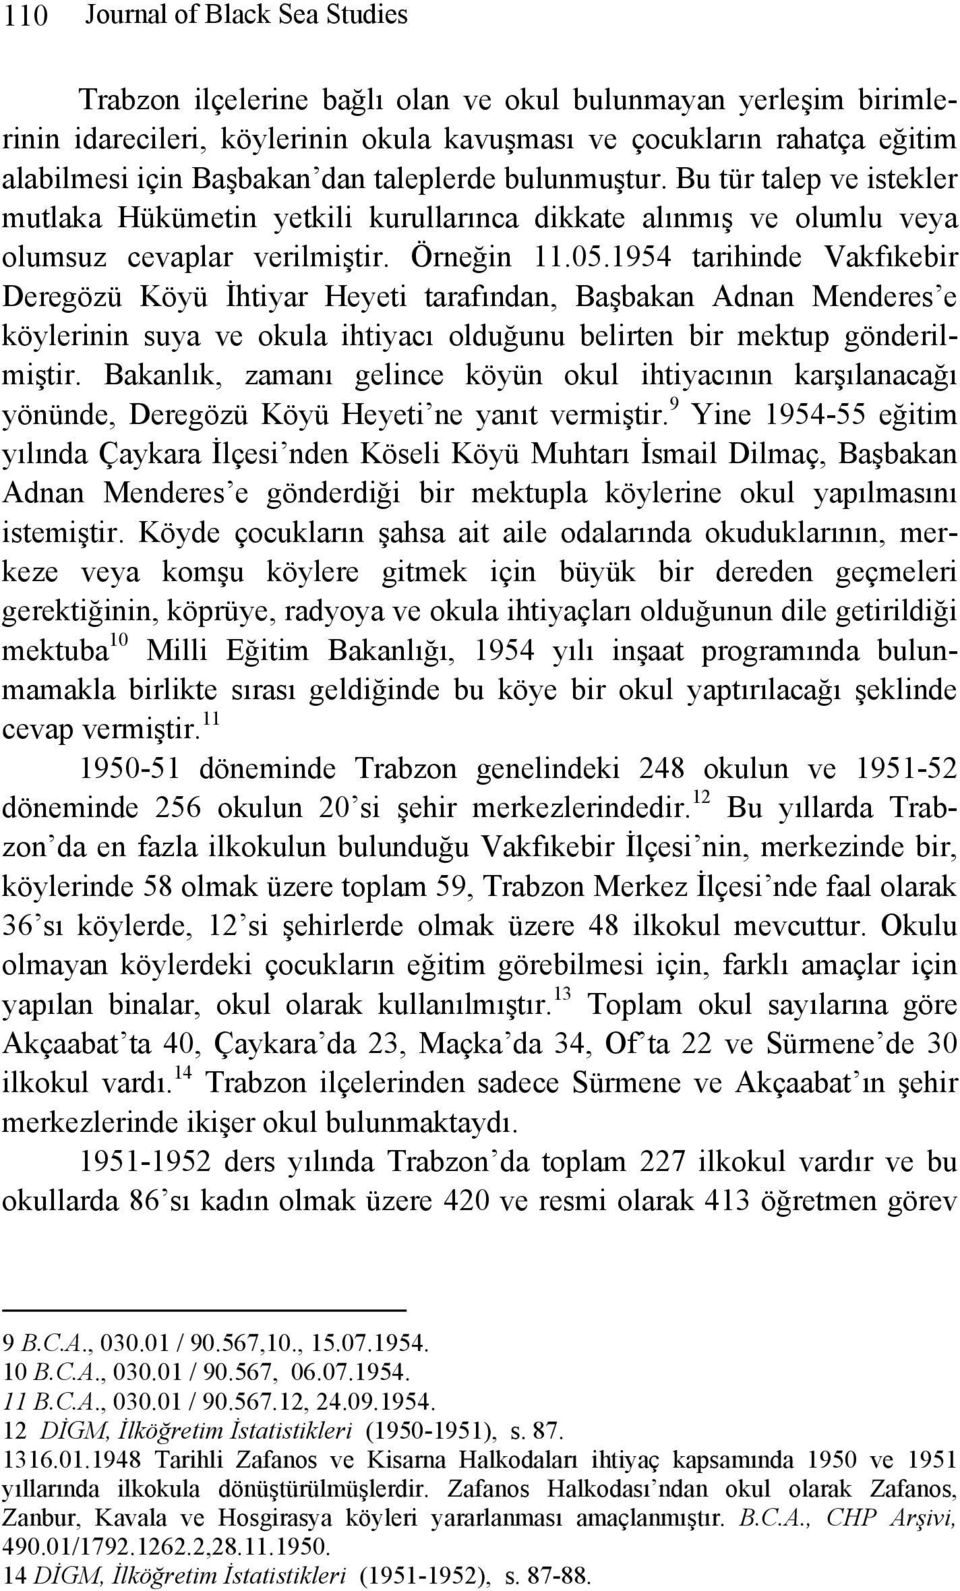 1954 tarihinde Vakfıkebir Deregözü Köyü İhtiyar Heyeti tarafından, Başbakan Adnan Menderes e köylerinin suya ve okula ihtiyacı olduğunu belirten bir mektup gönderilmiştir.